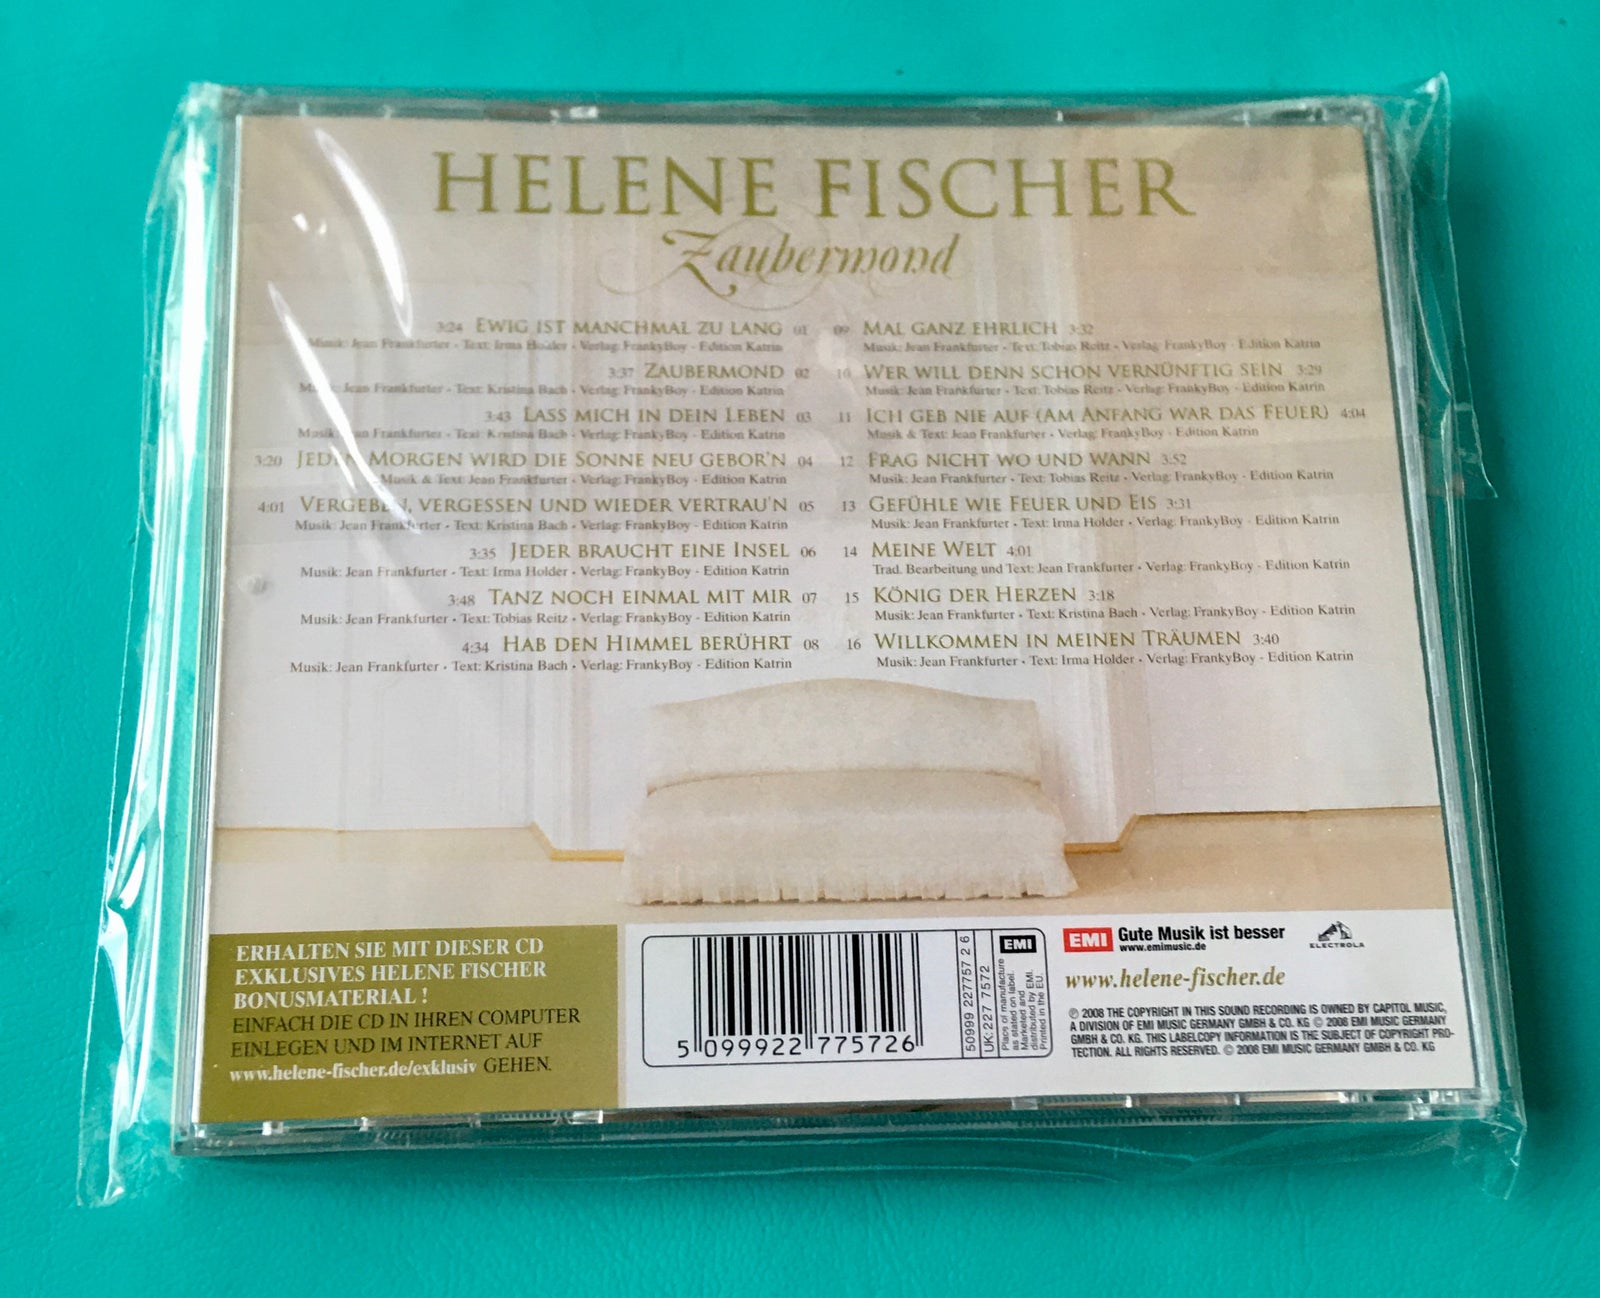 Helene Fischer: Zaubermond, pop